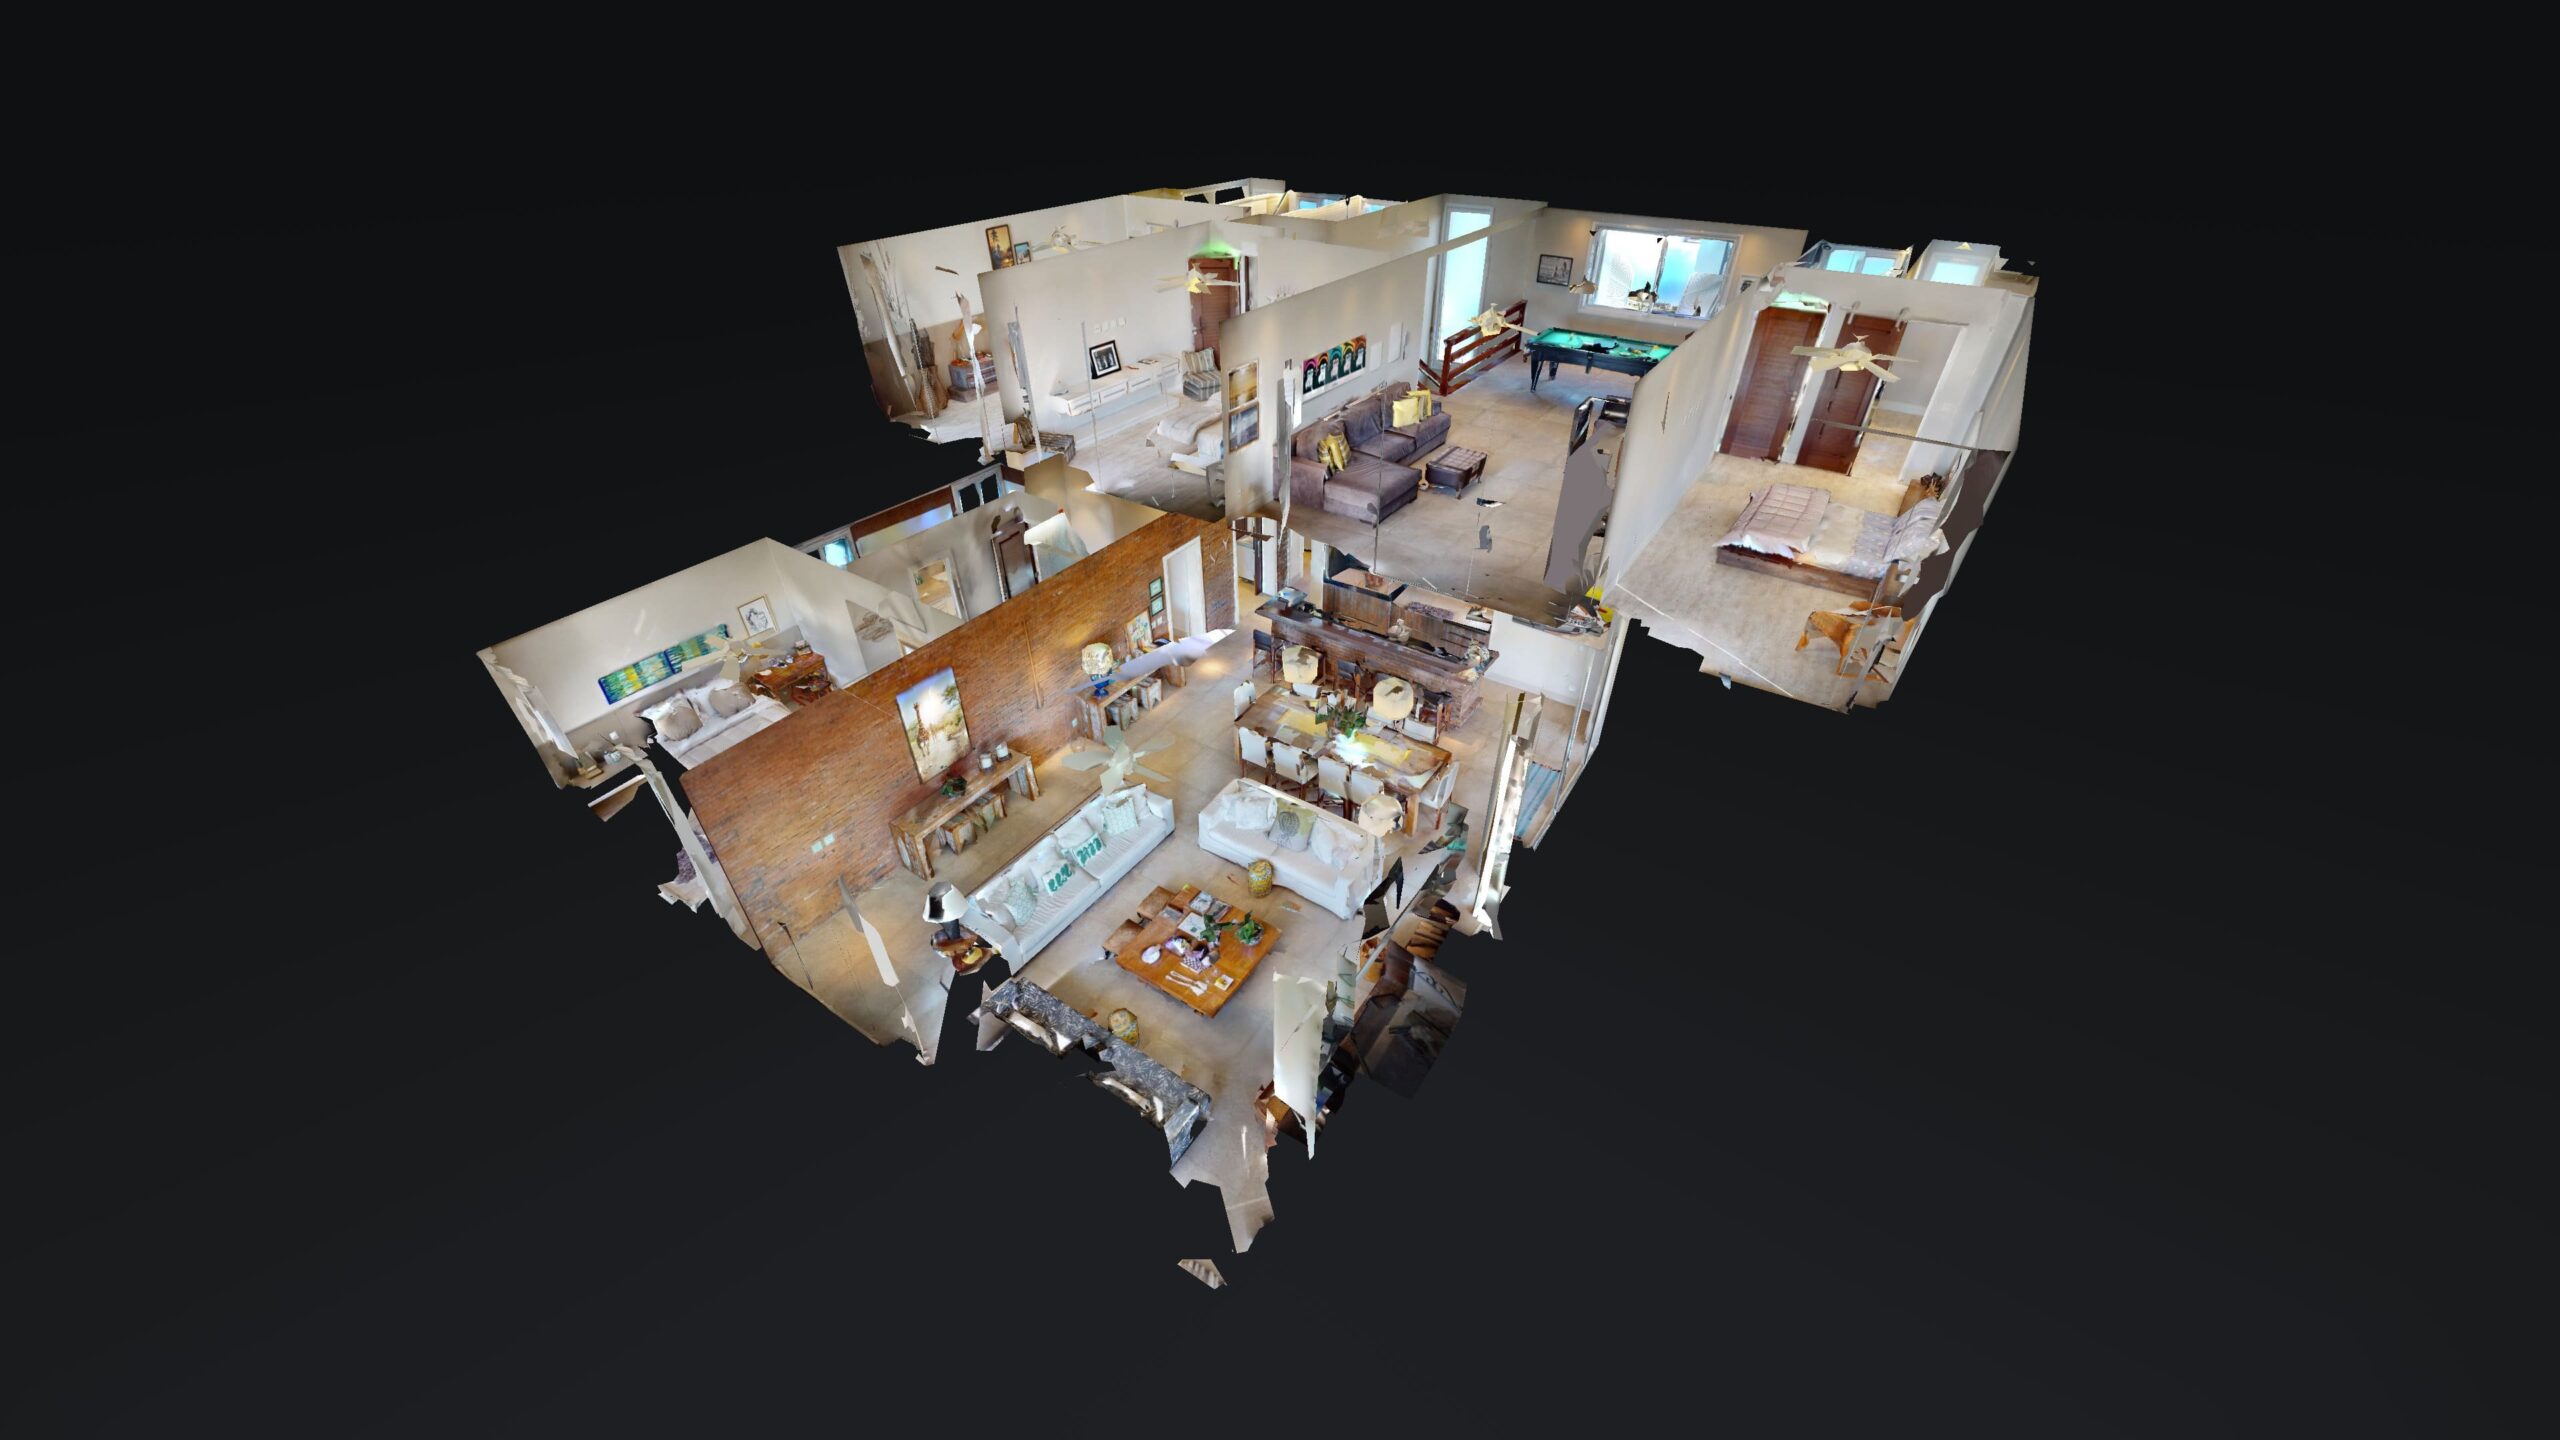 Conheça o Tour Virtual 3D e descubra como ele pode facilitar a visualização de ambientes tridimensionais.